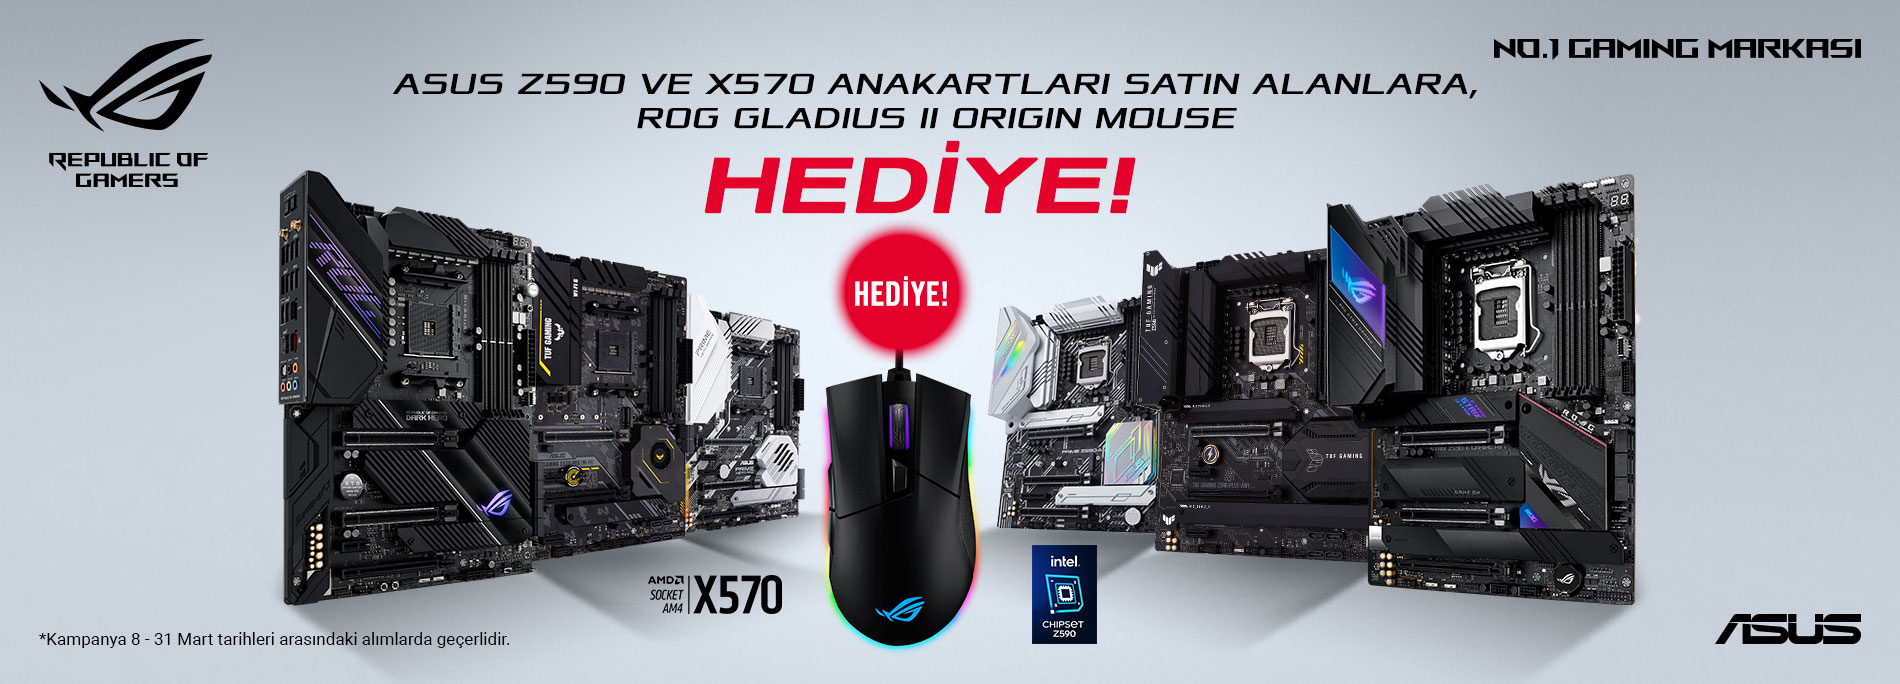 ASUS Z590 ve X570 Anakart Satın Alımlarına, ROG Gladius II Origin Mouse Hediye